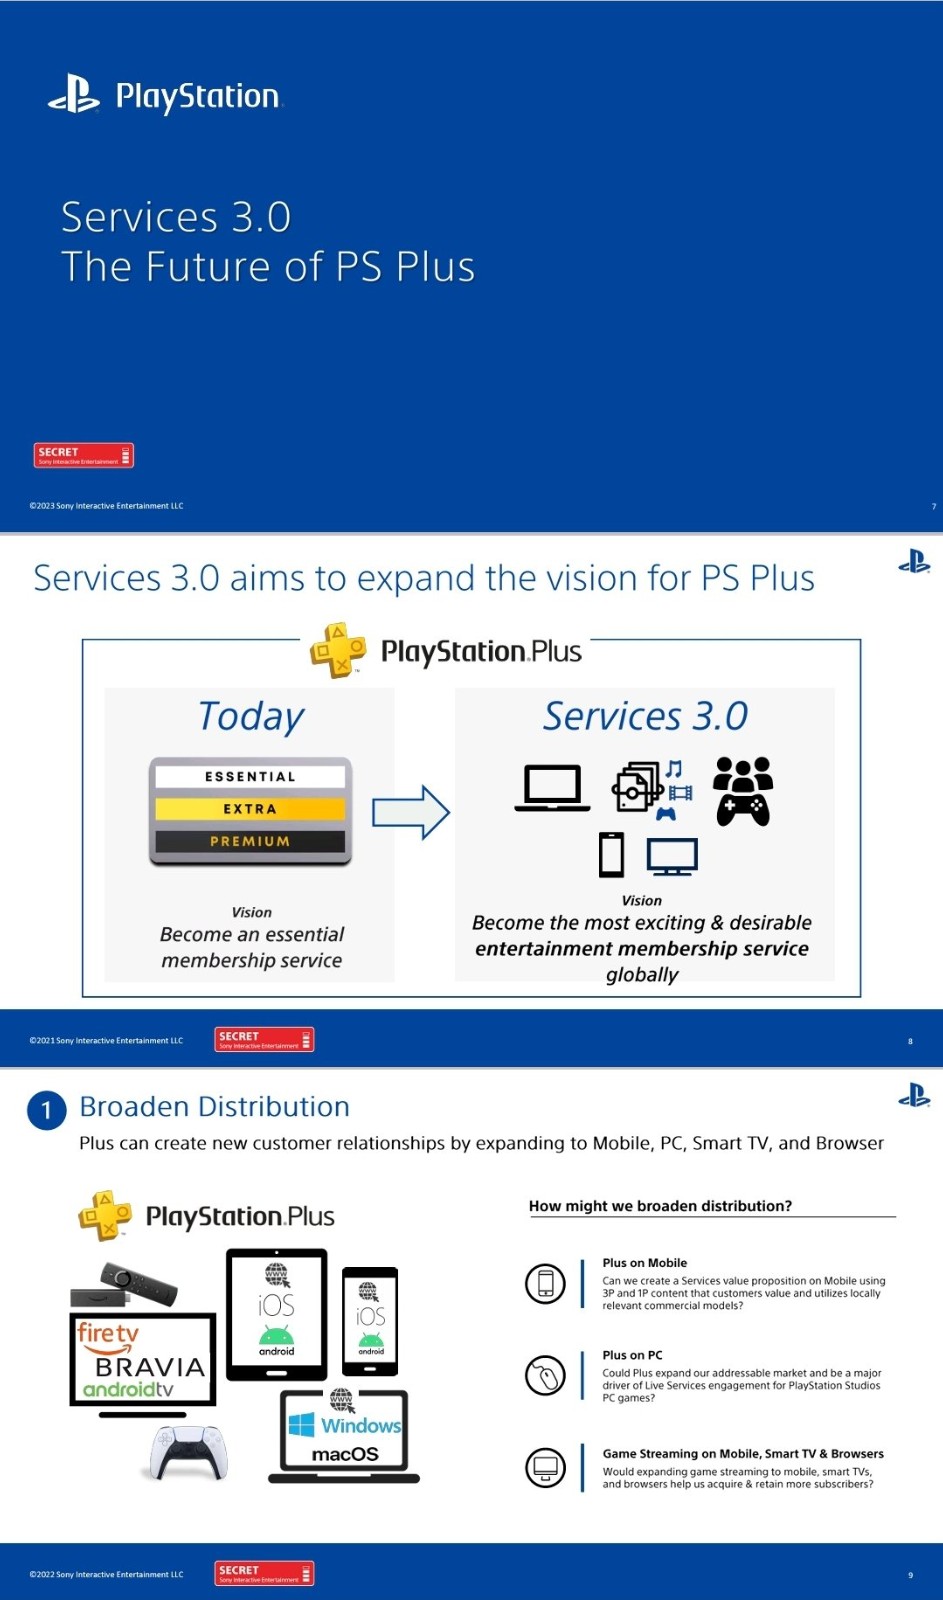 泄密文件称索尼有计划在PC上推出PS+服务 创造新客户